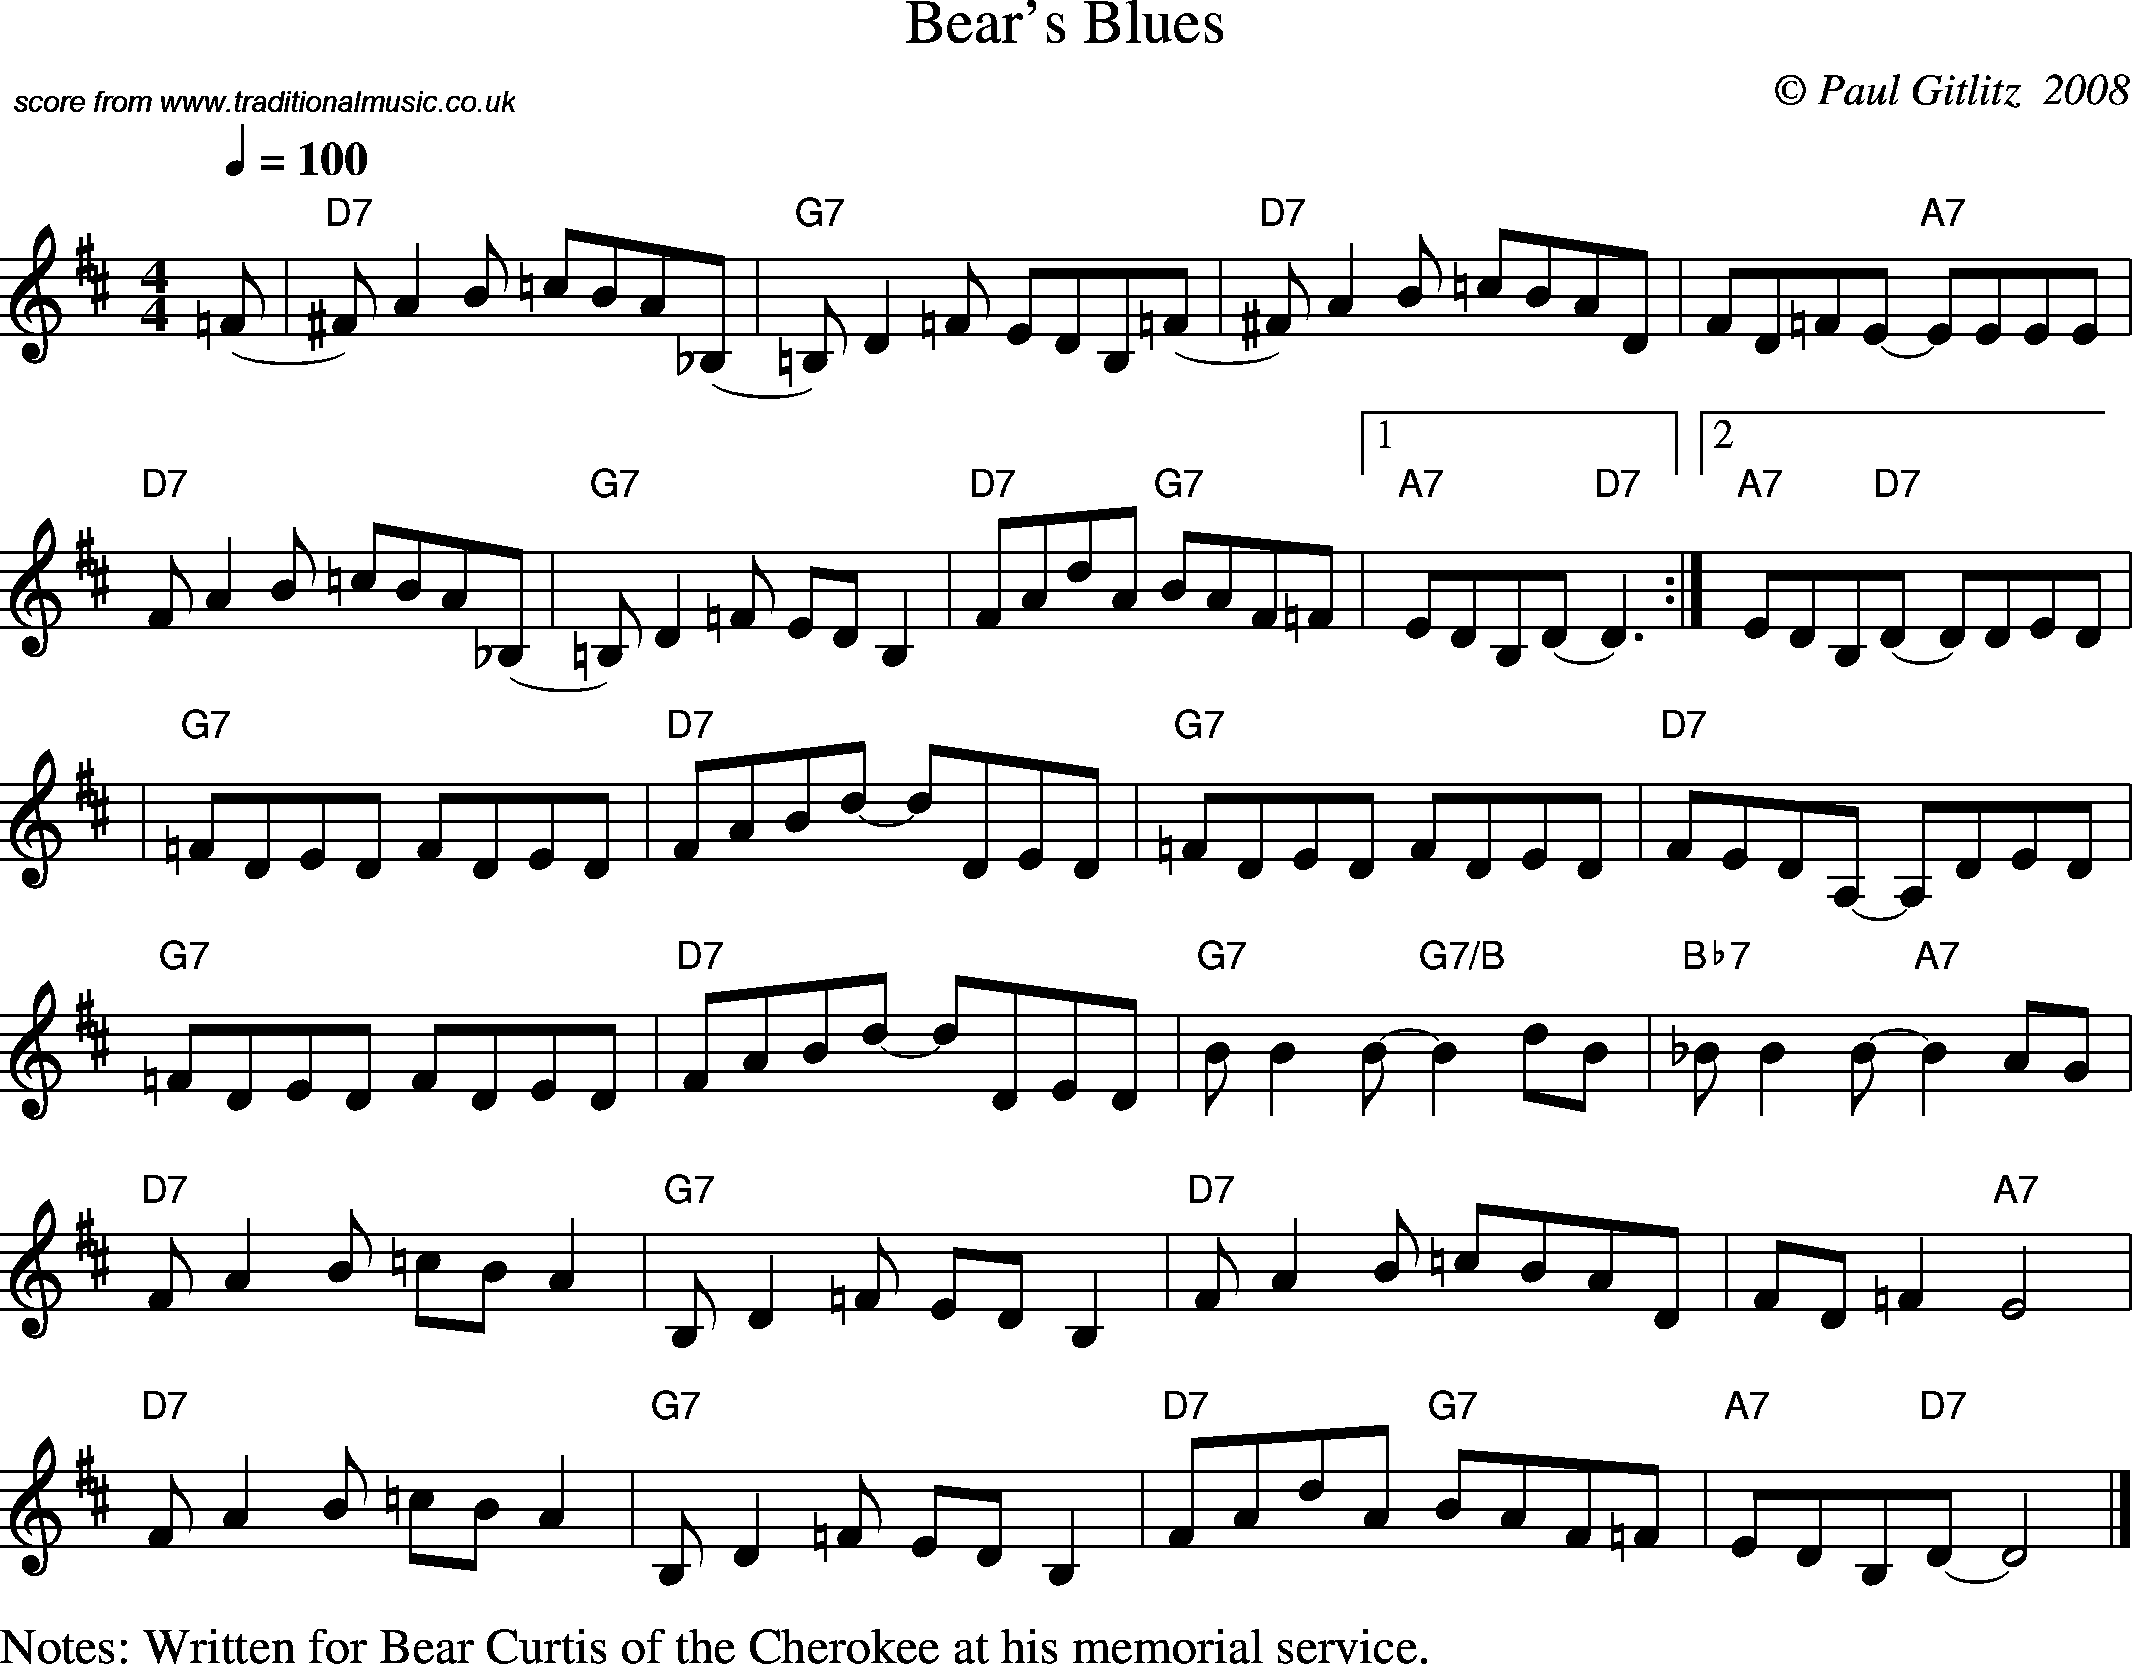 Sheet Music Score for Swing - Bear's Blues